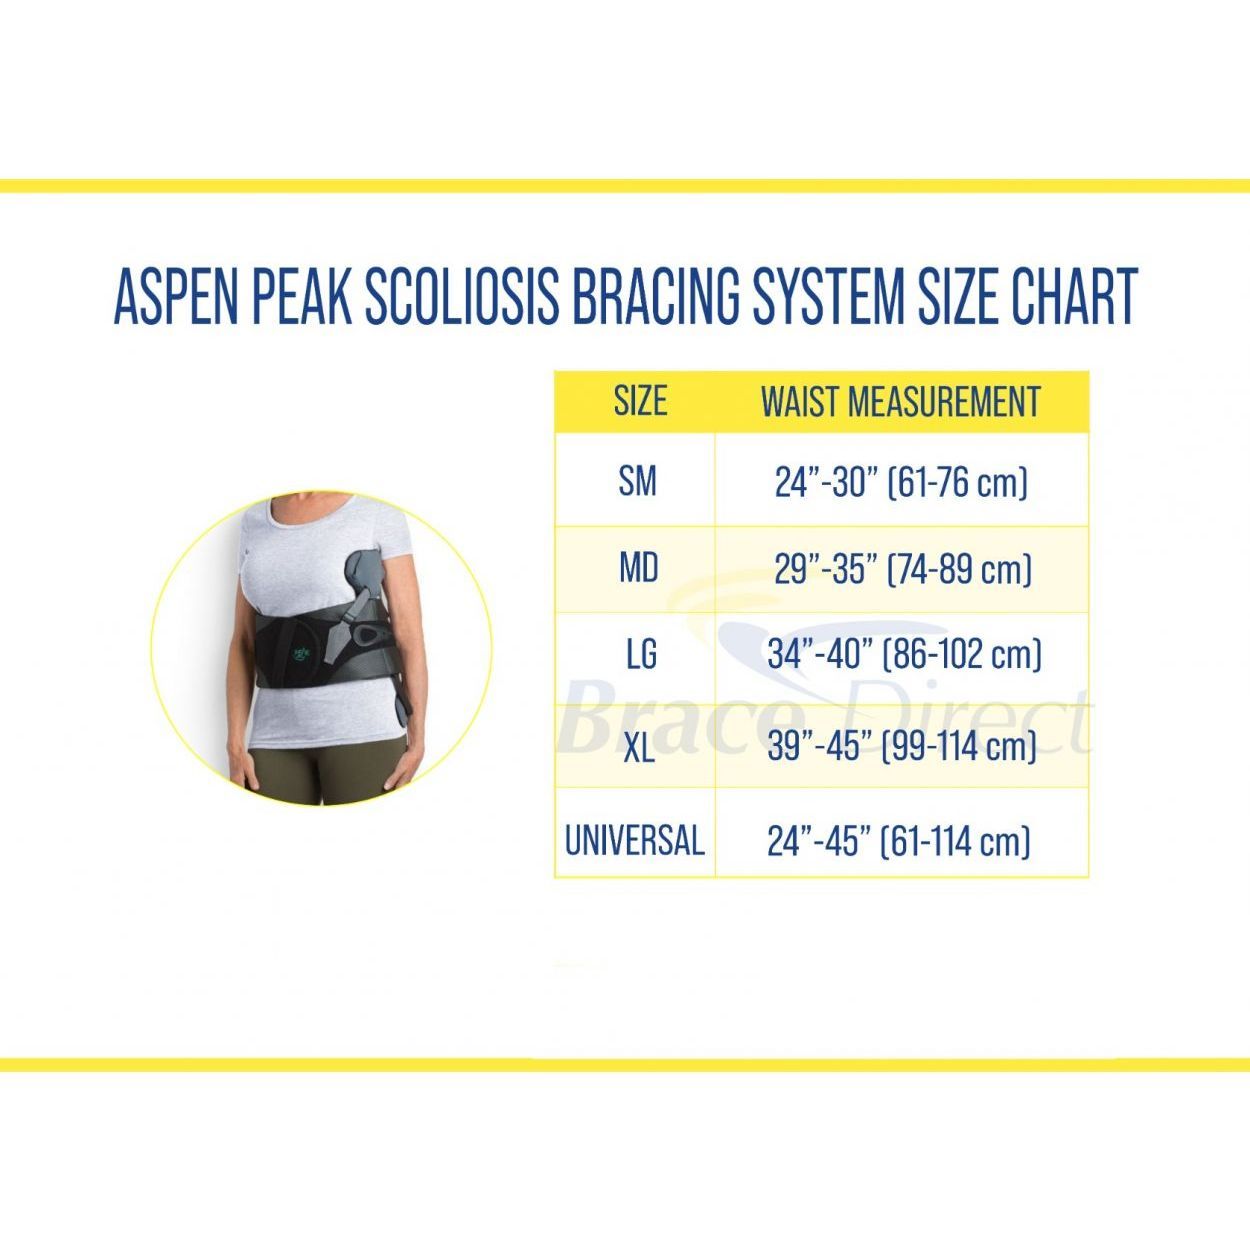 Aspen Peak Scoliosis Bracing System